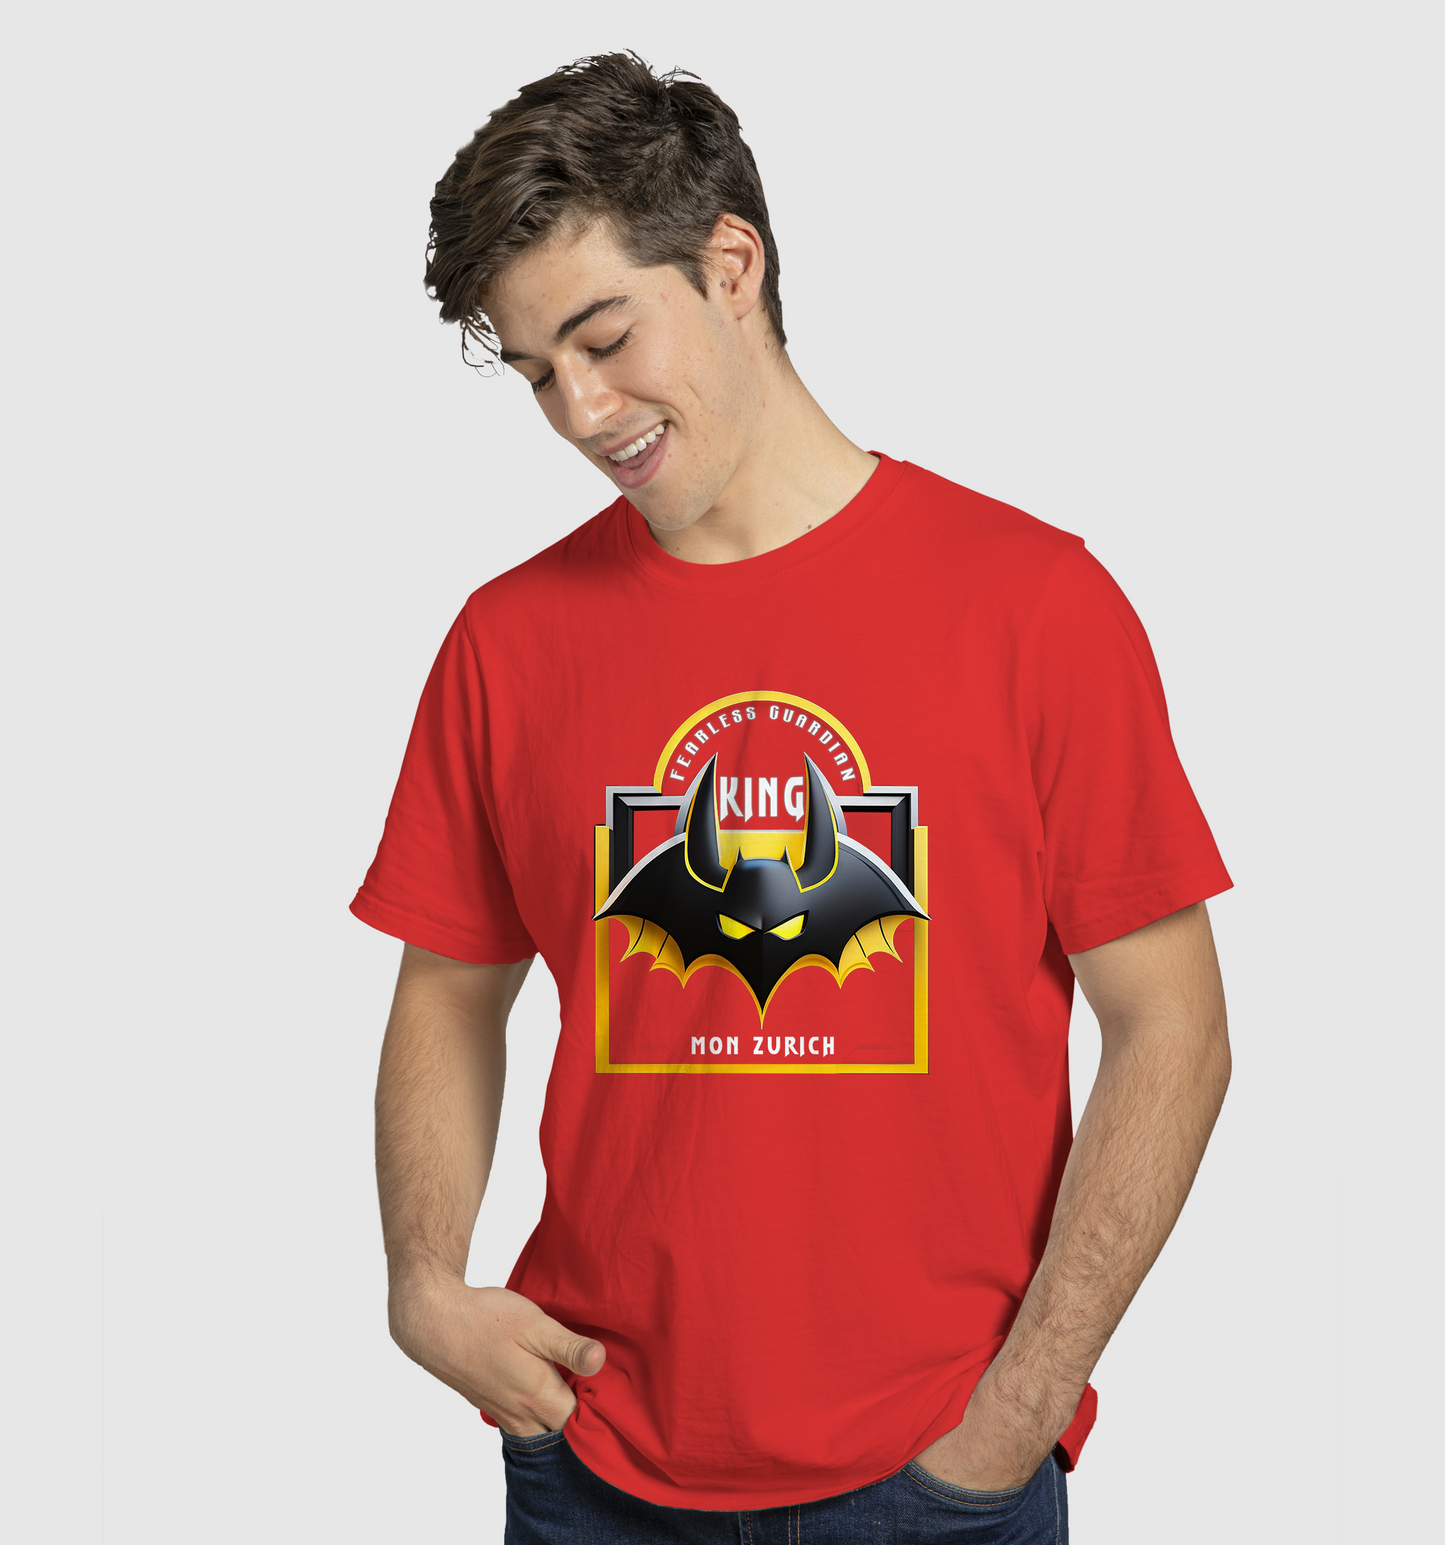 Bat King T-Shirt In Dark - Mon Zurich Originals